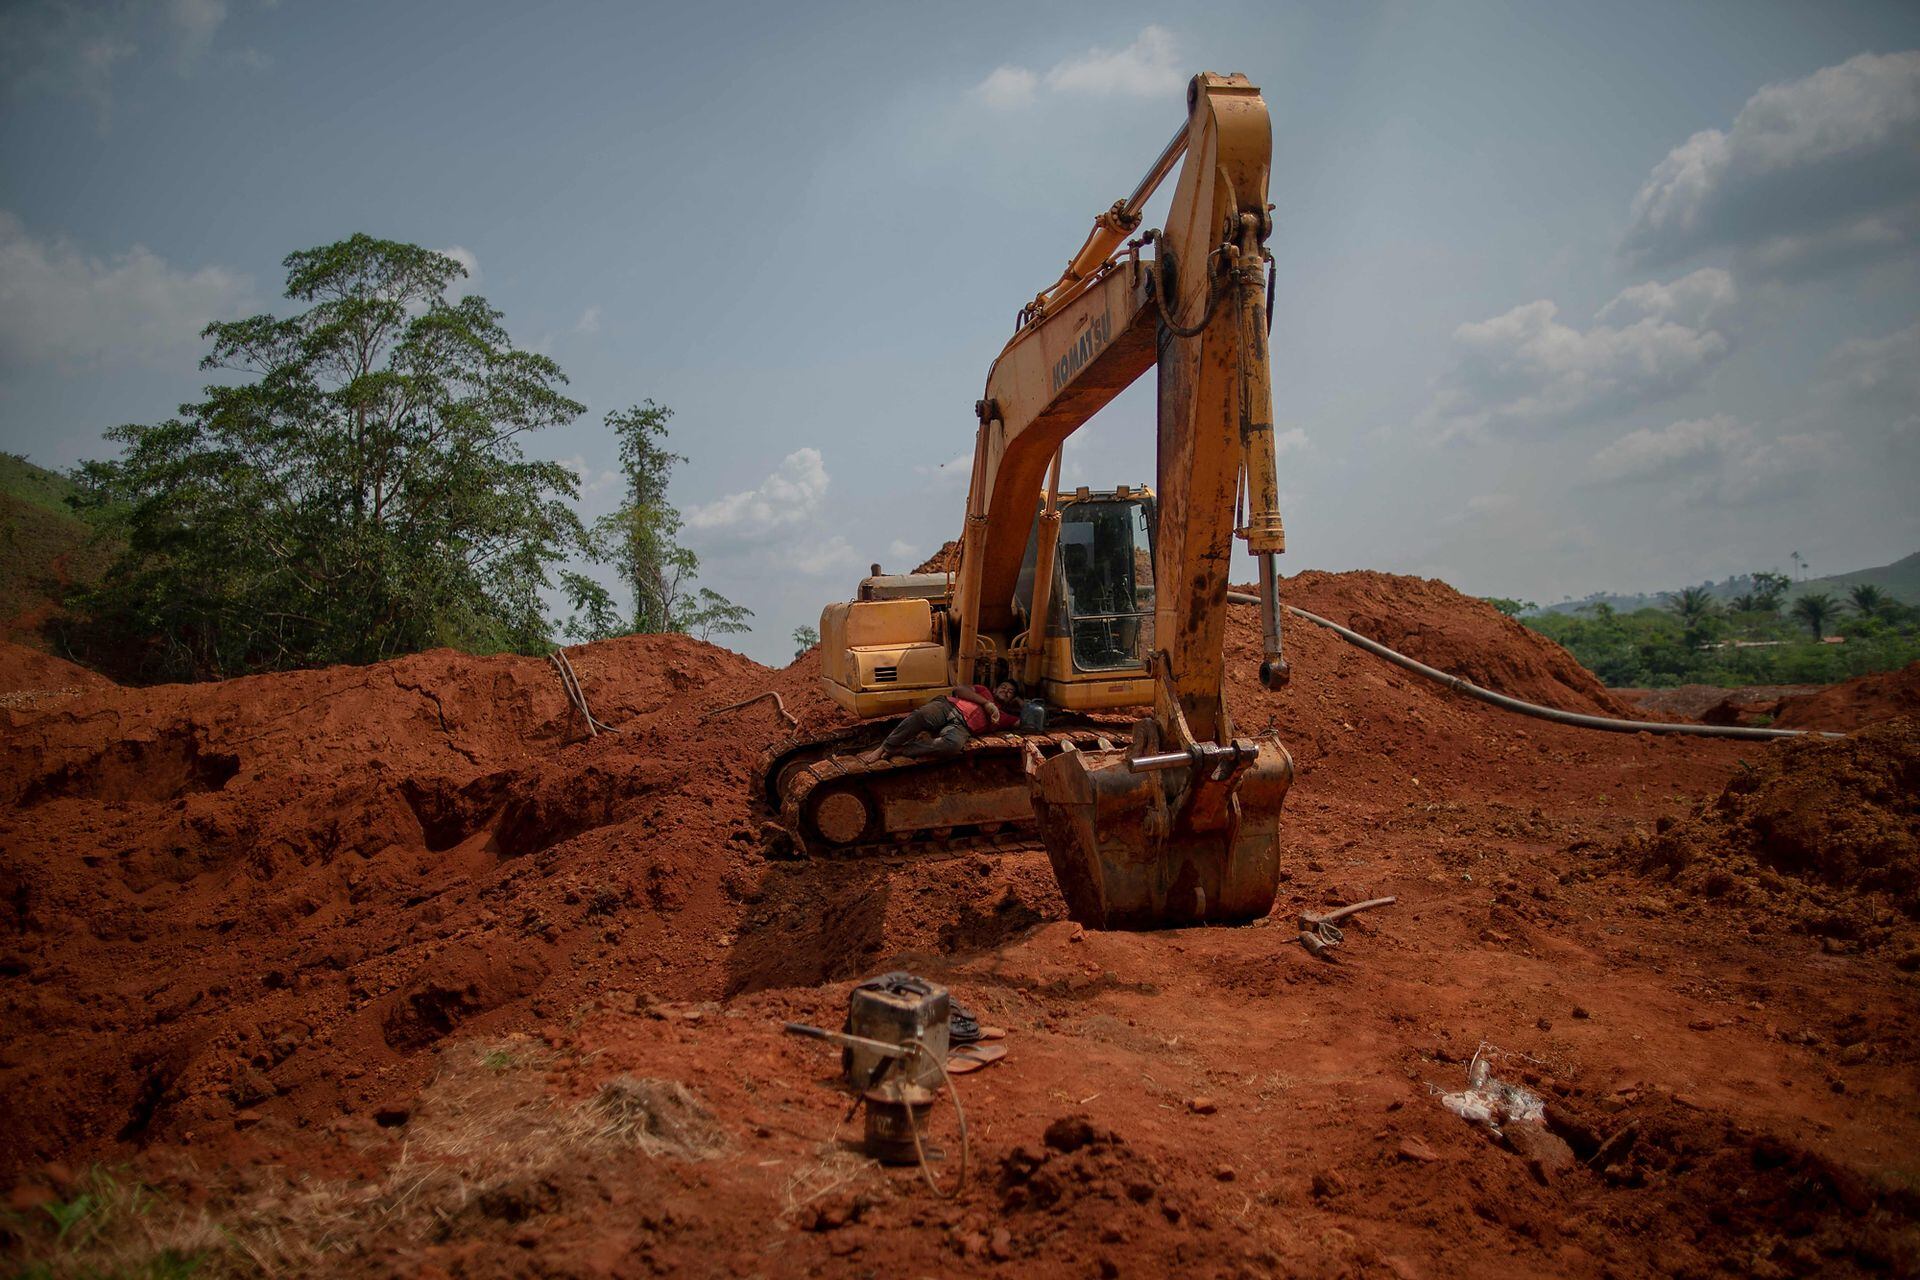 Los mineros ilegales de oro descansan sobre una maquinaria rota en una mina de oro ilegal en Sao Felix do Xingu, estado de Pará